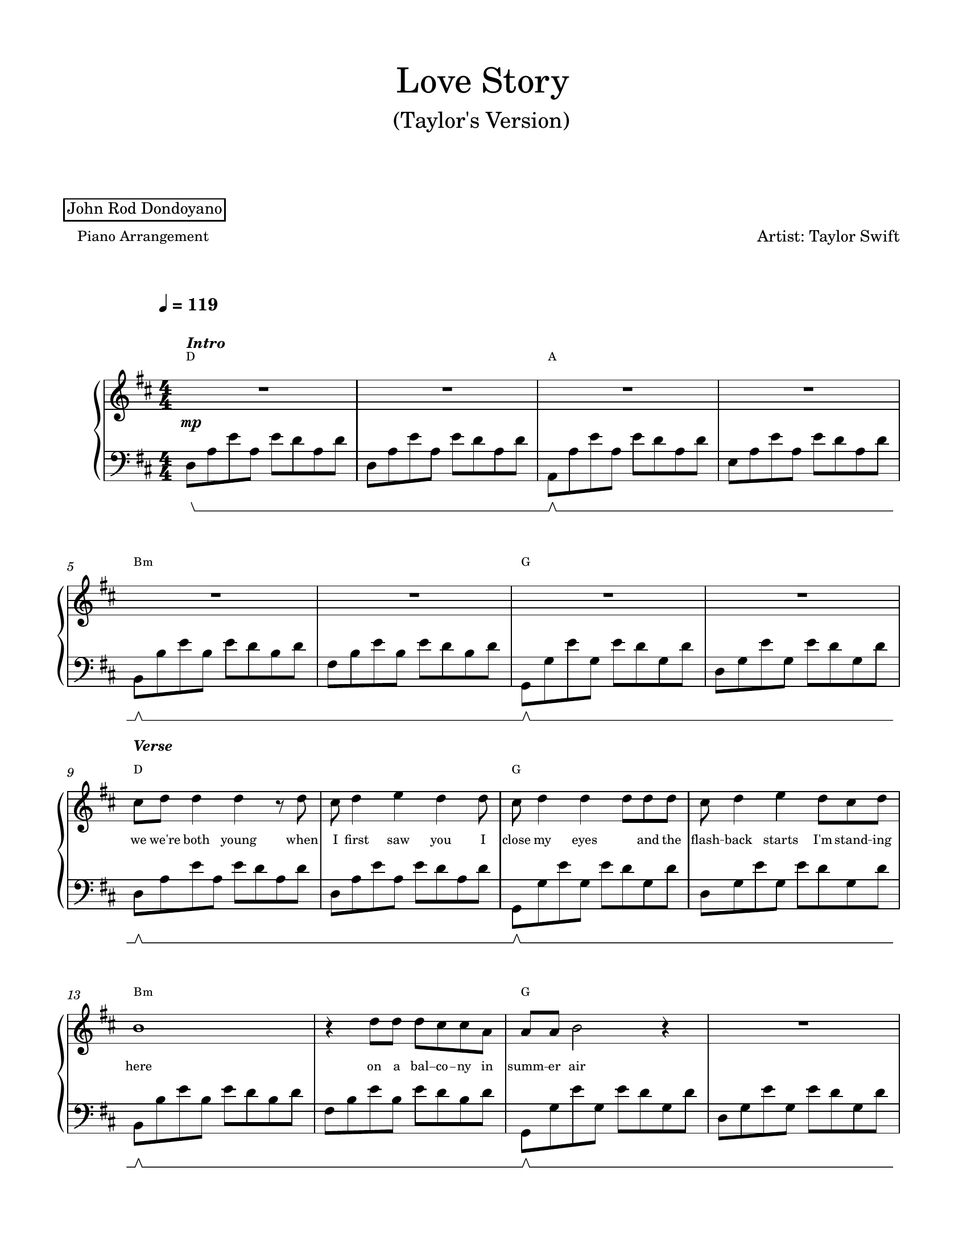 Taylor Swift - Love Story (Taylor's Version)(PIANO SHEET) by John Rod Dondoyano